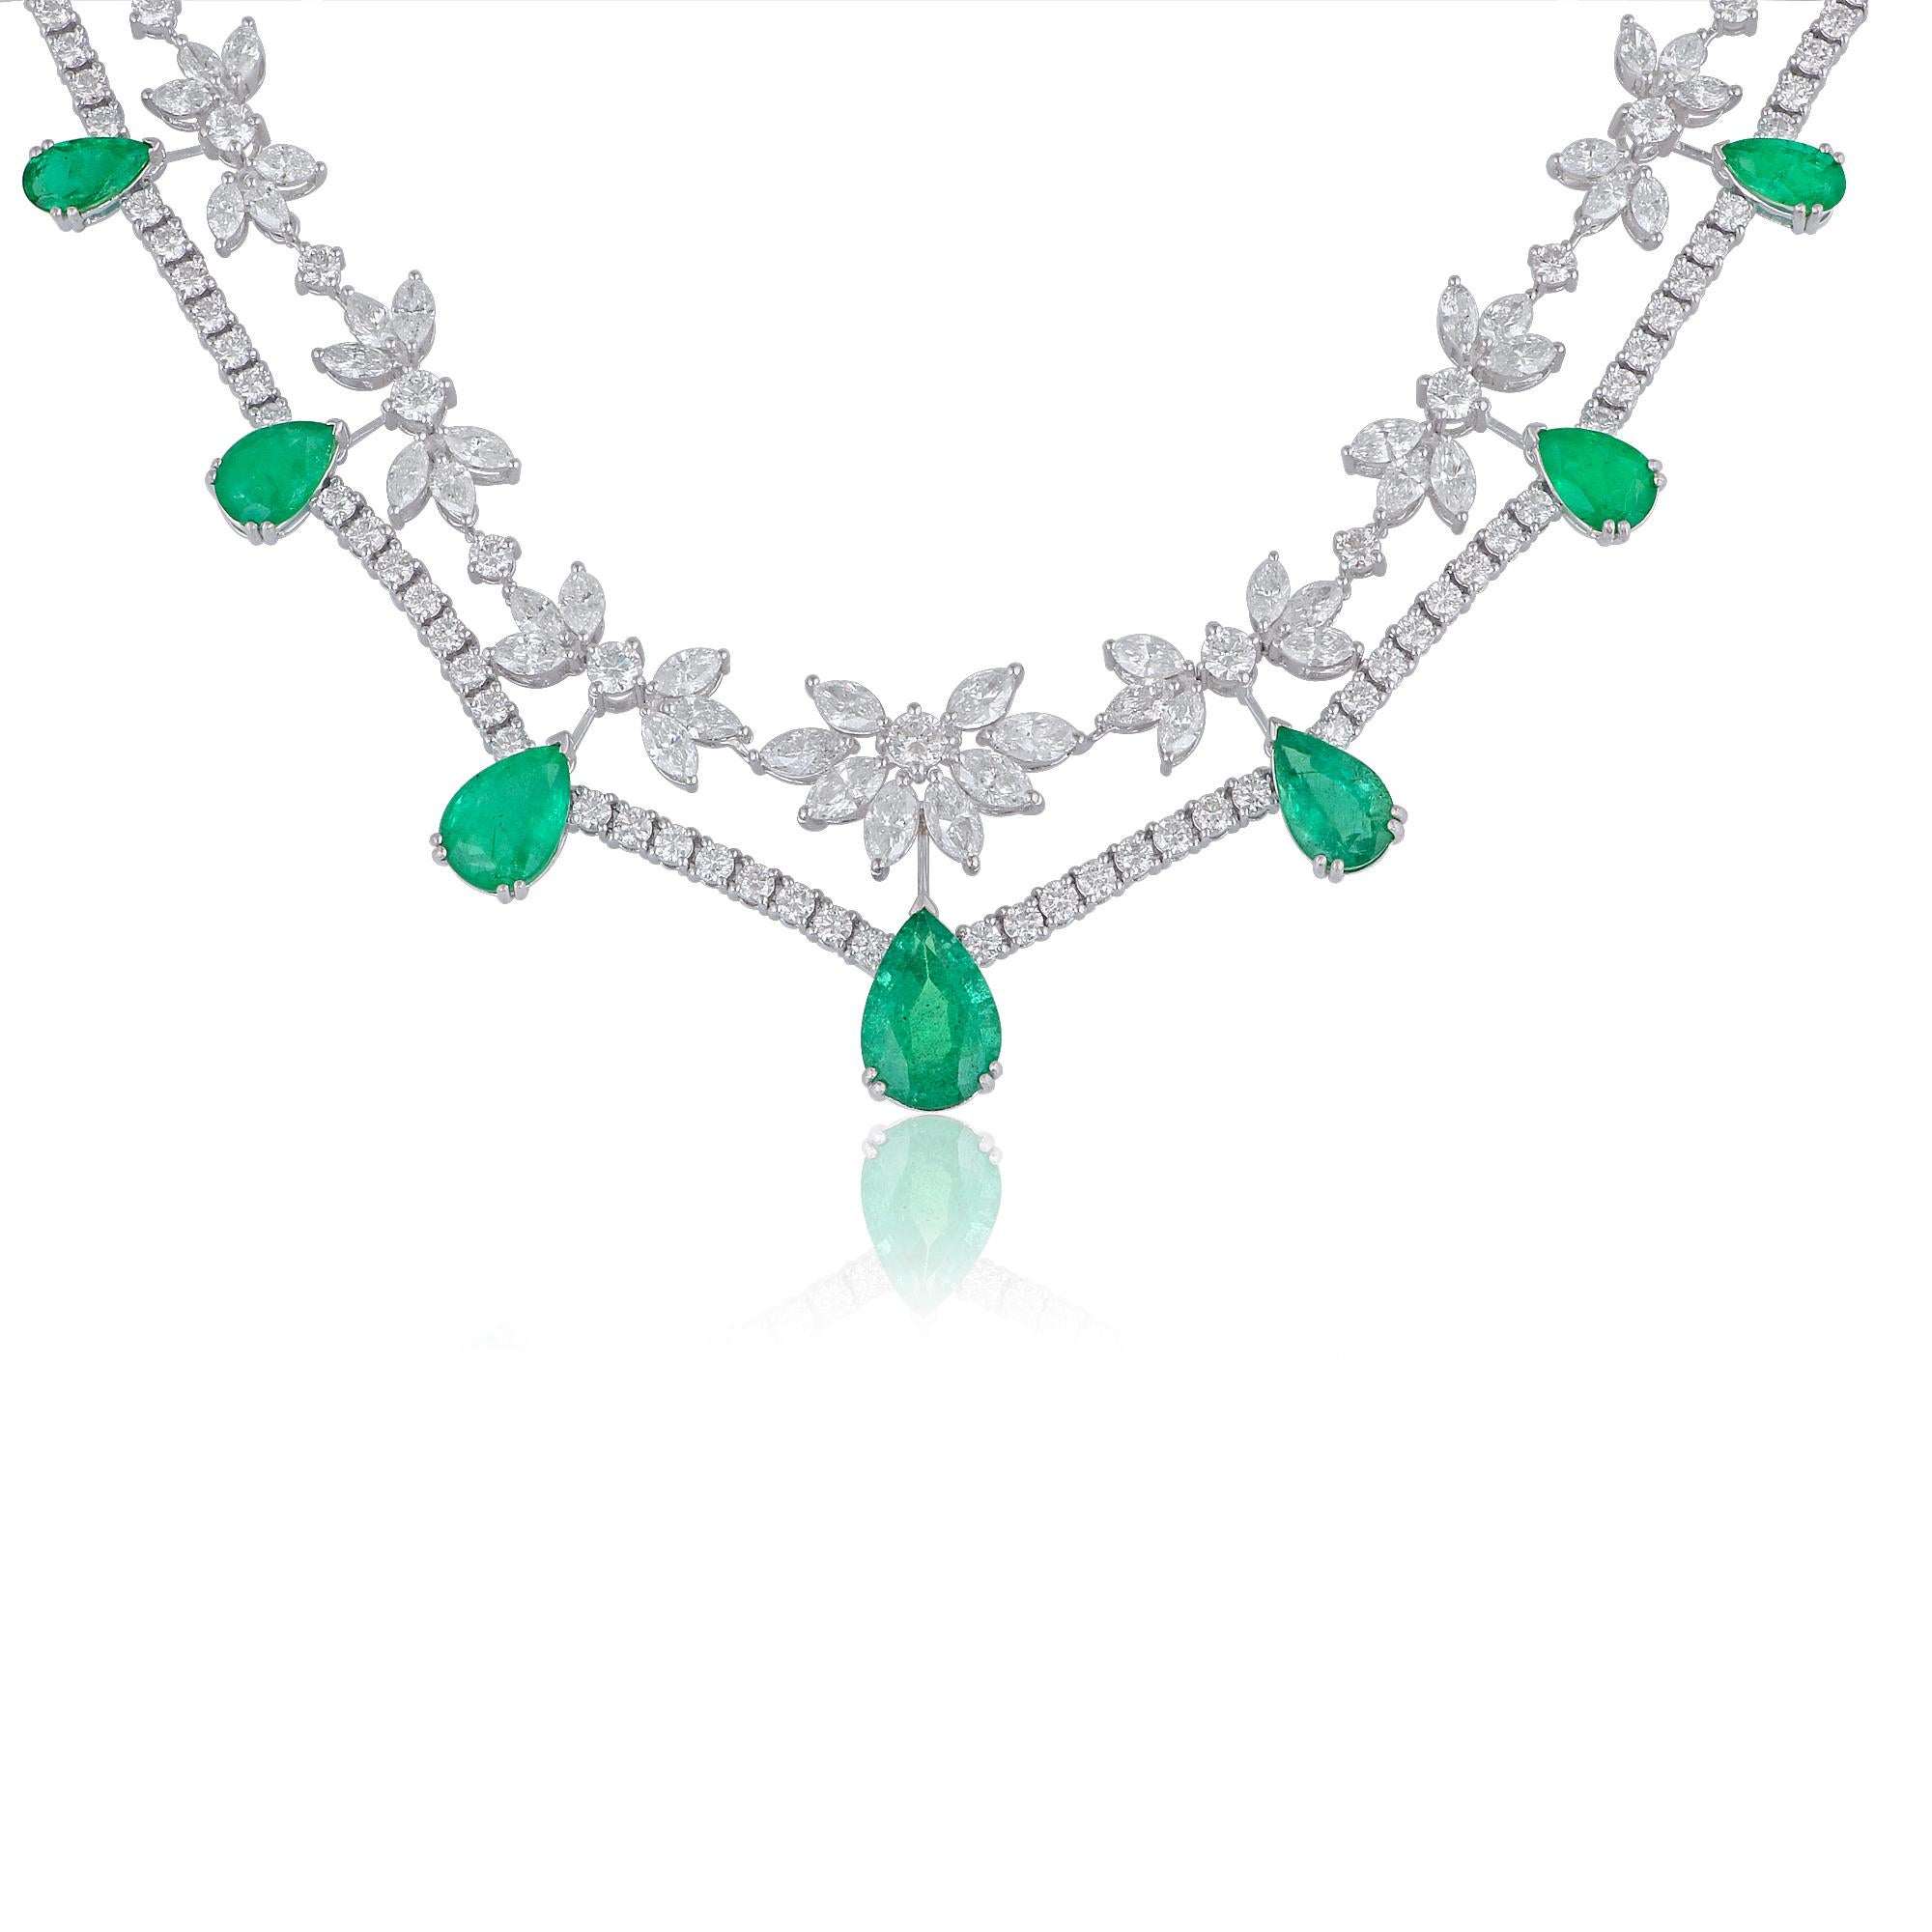 Diese atemberaubende Halskette mit einem birnenförmigen, natürlichen Smaragd, der mit einem schimmernden Diamanten eingefasst ist, verleiht Ihrem Stil einen besonderen Touch. Dieses sorgfältig aus 18 Karat Weißgold gefertigte Schmuckstück strahlt